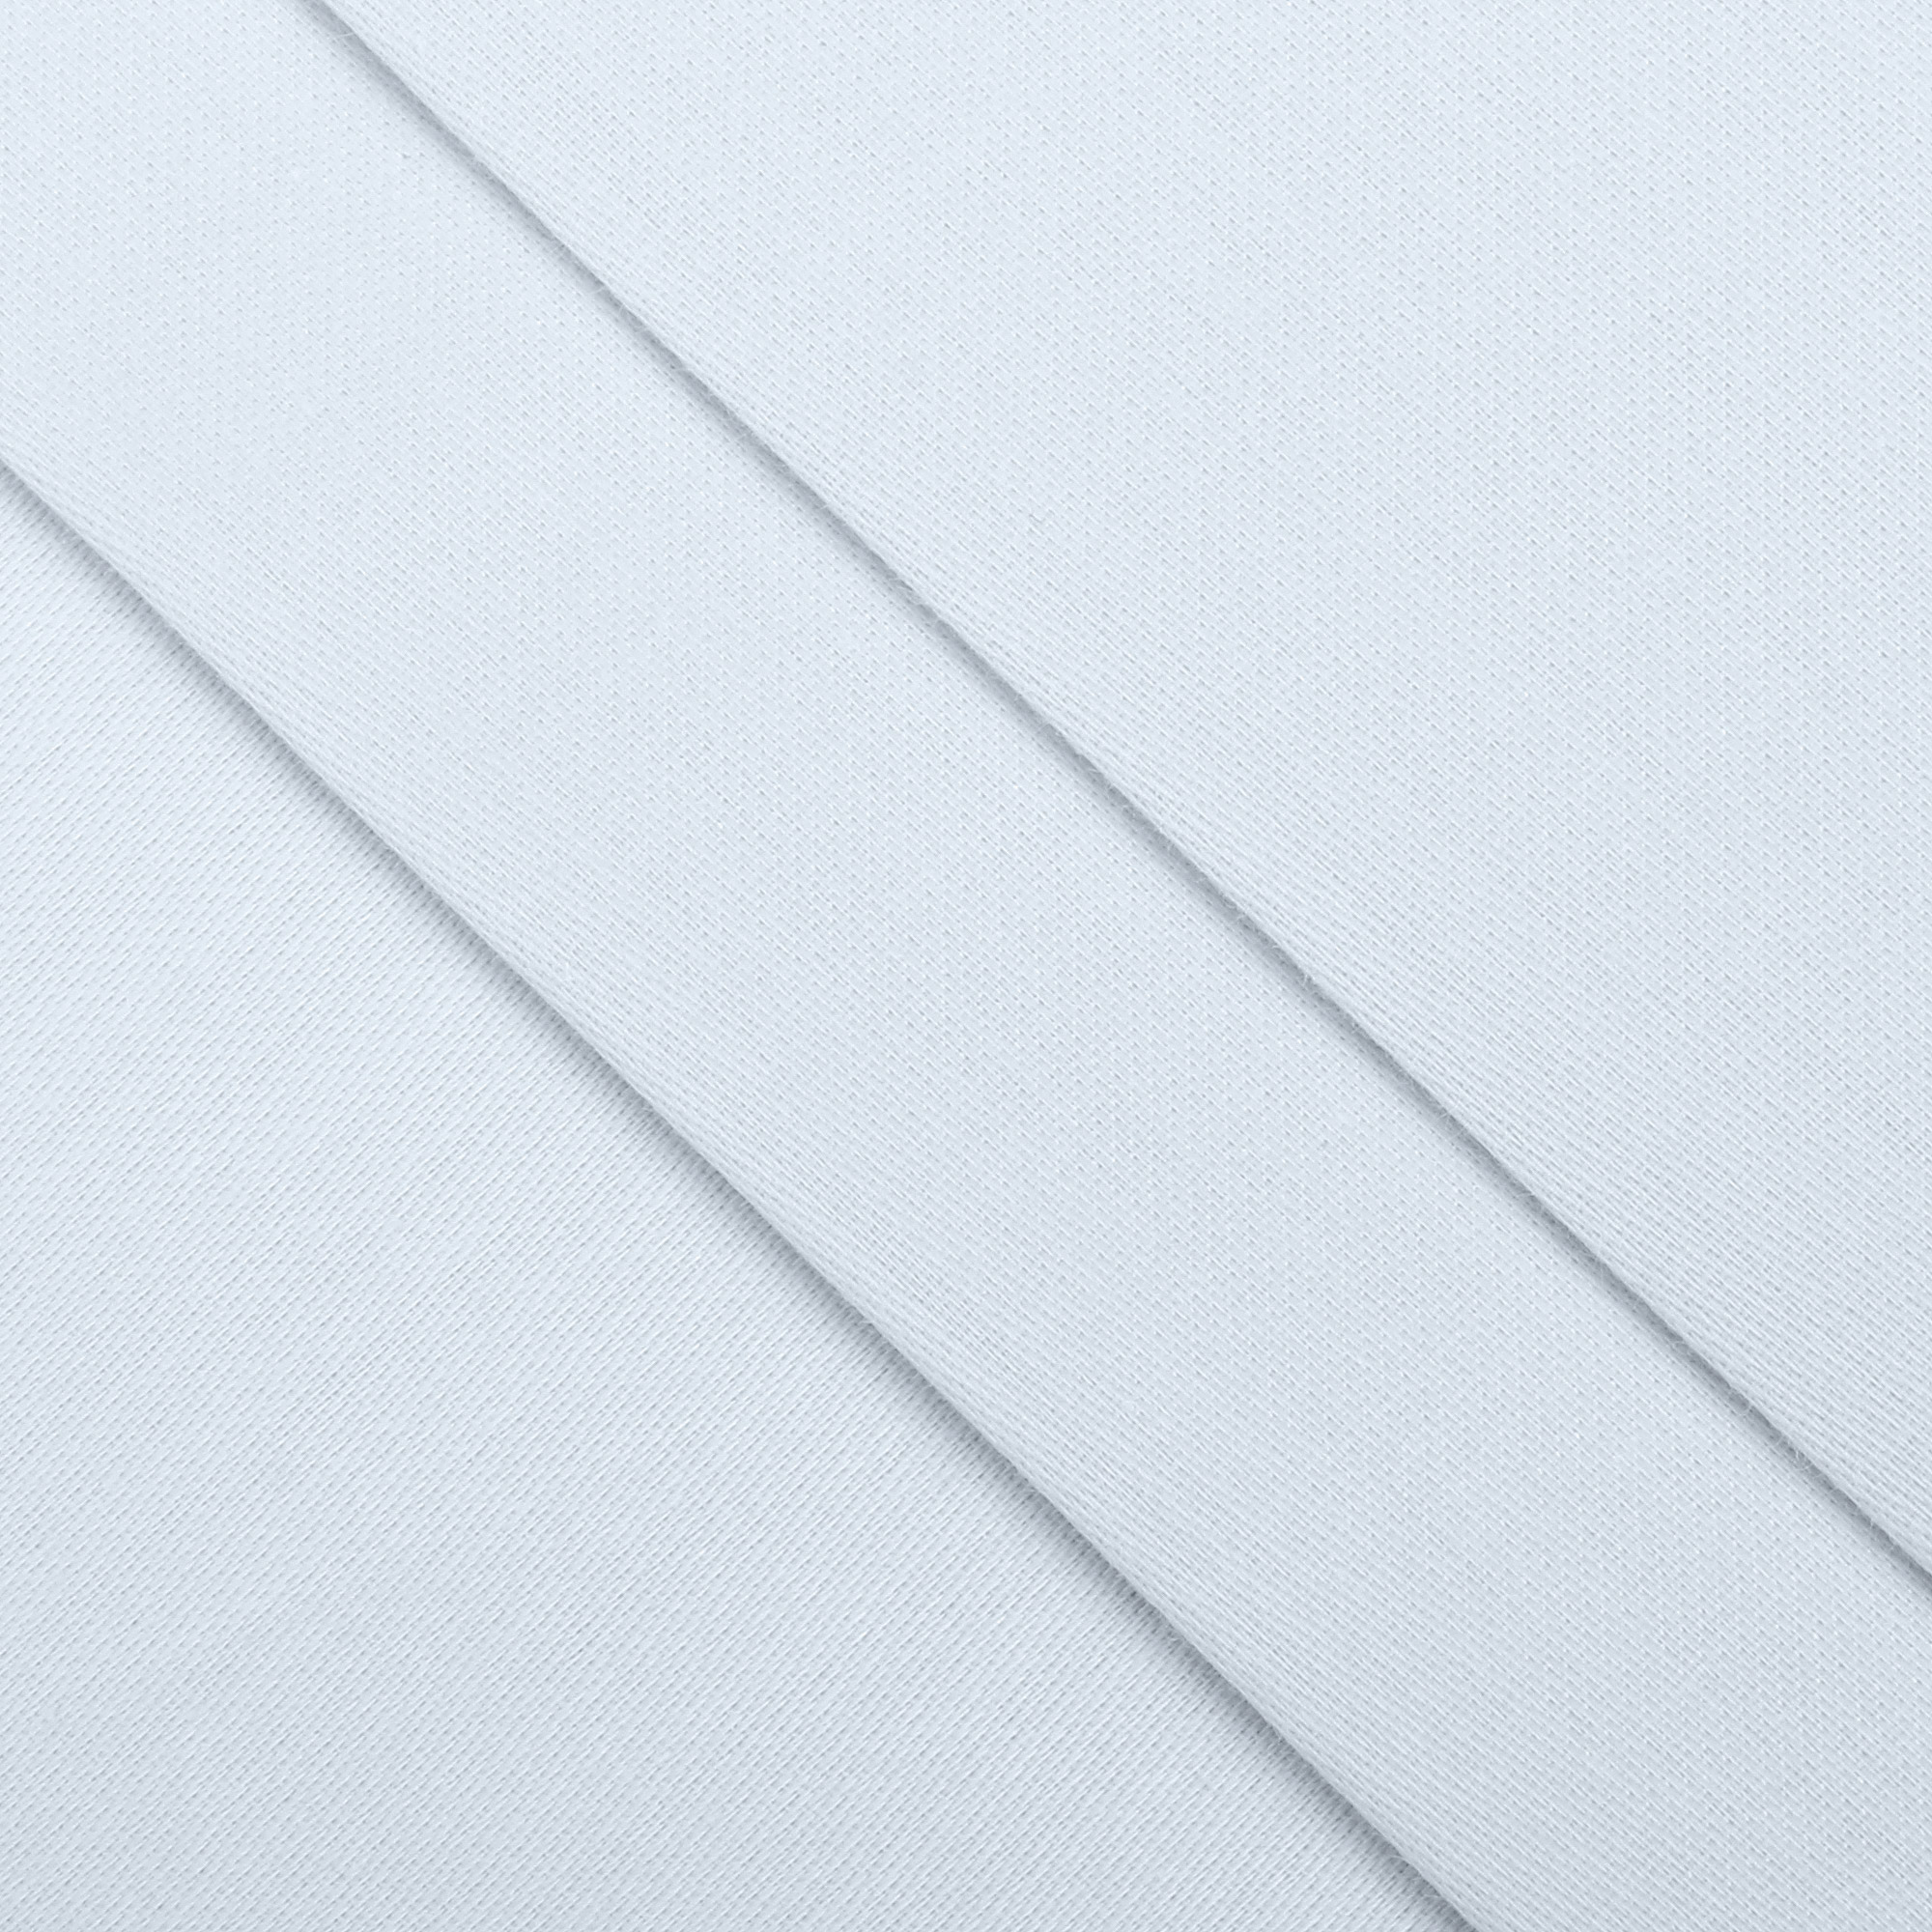 Комплект постельного белья La Besse Сатин серый Кинг сайз, размер Кинг сайз - фото 3